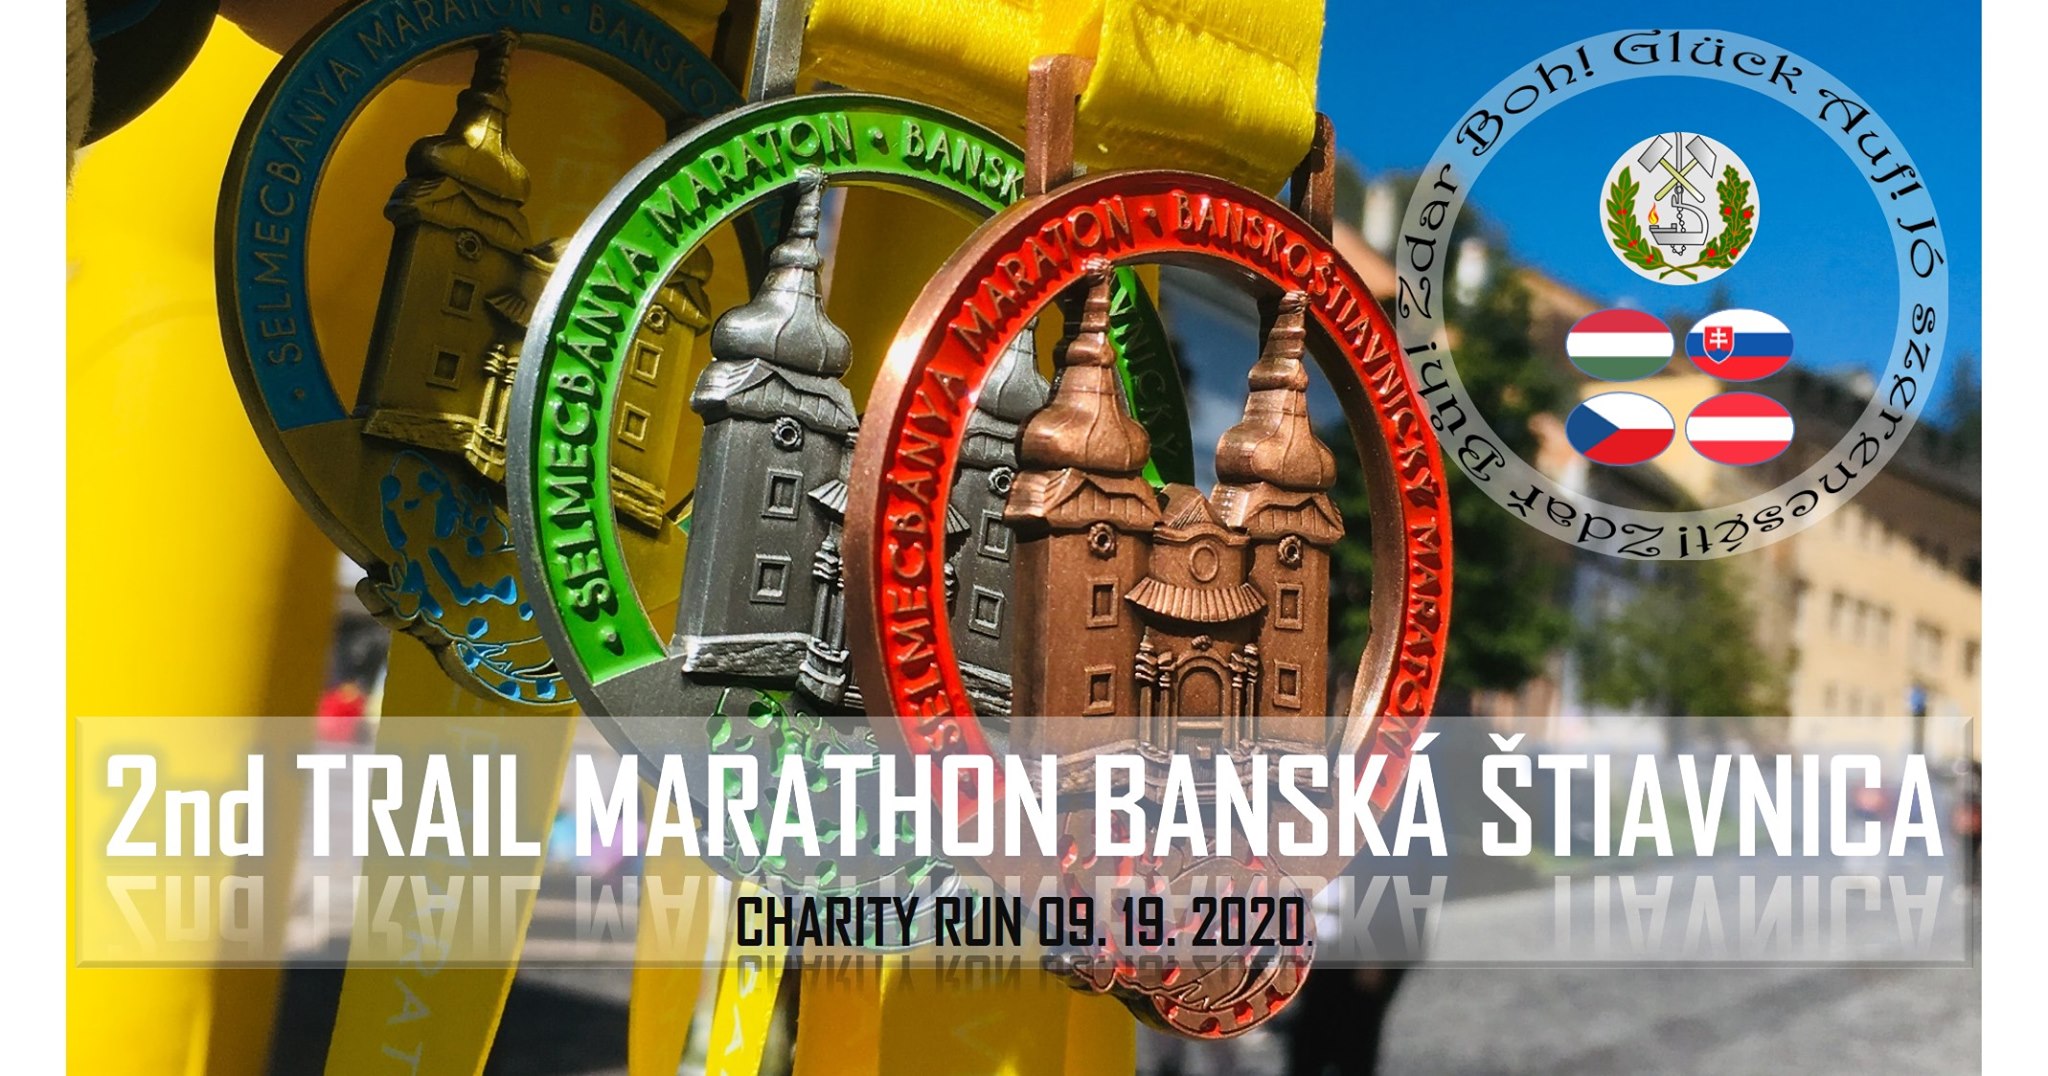 2nd Trail Marathon Banská Štiavnica